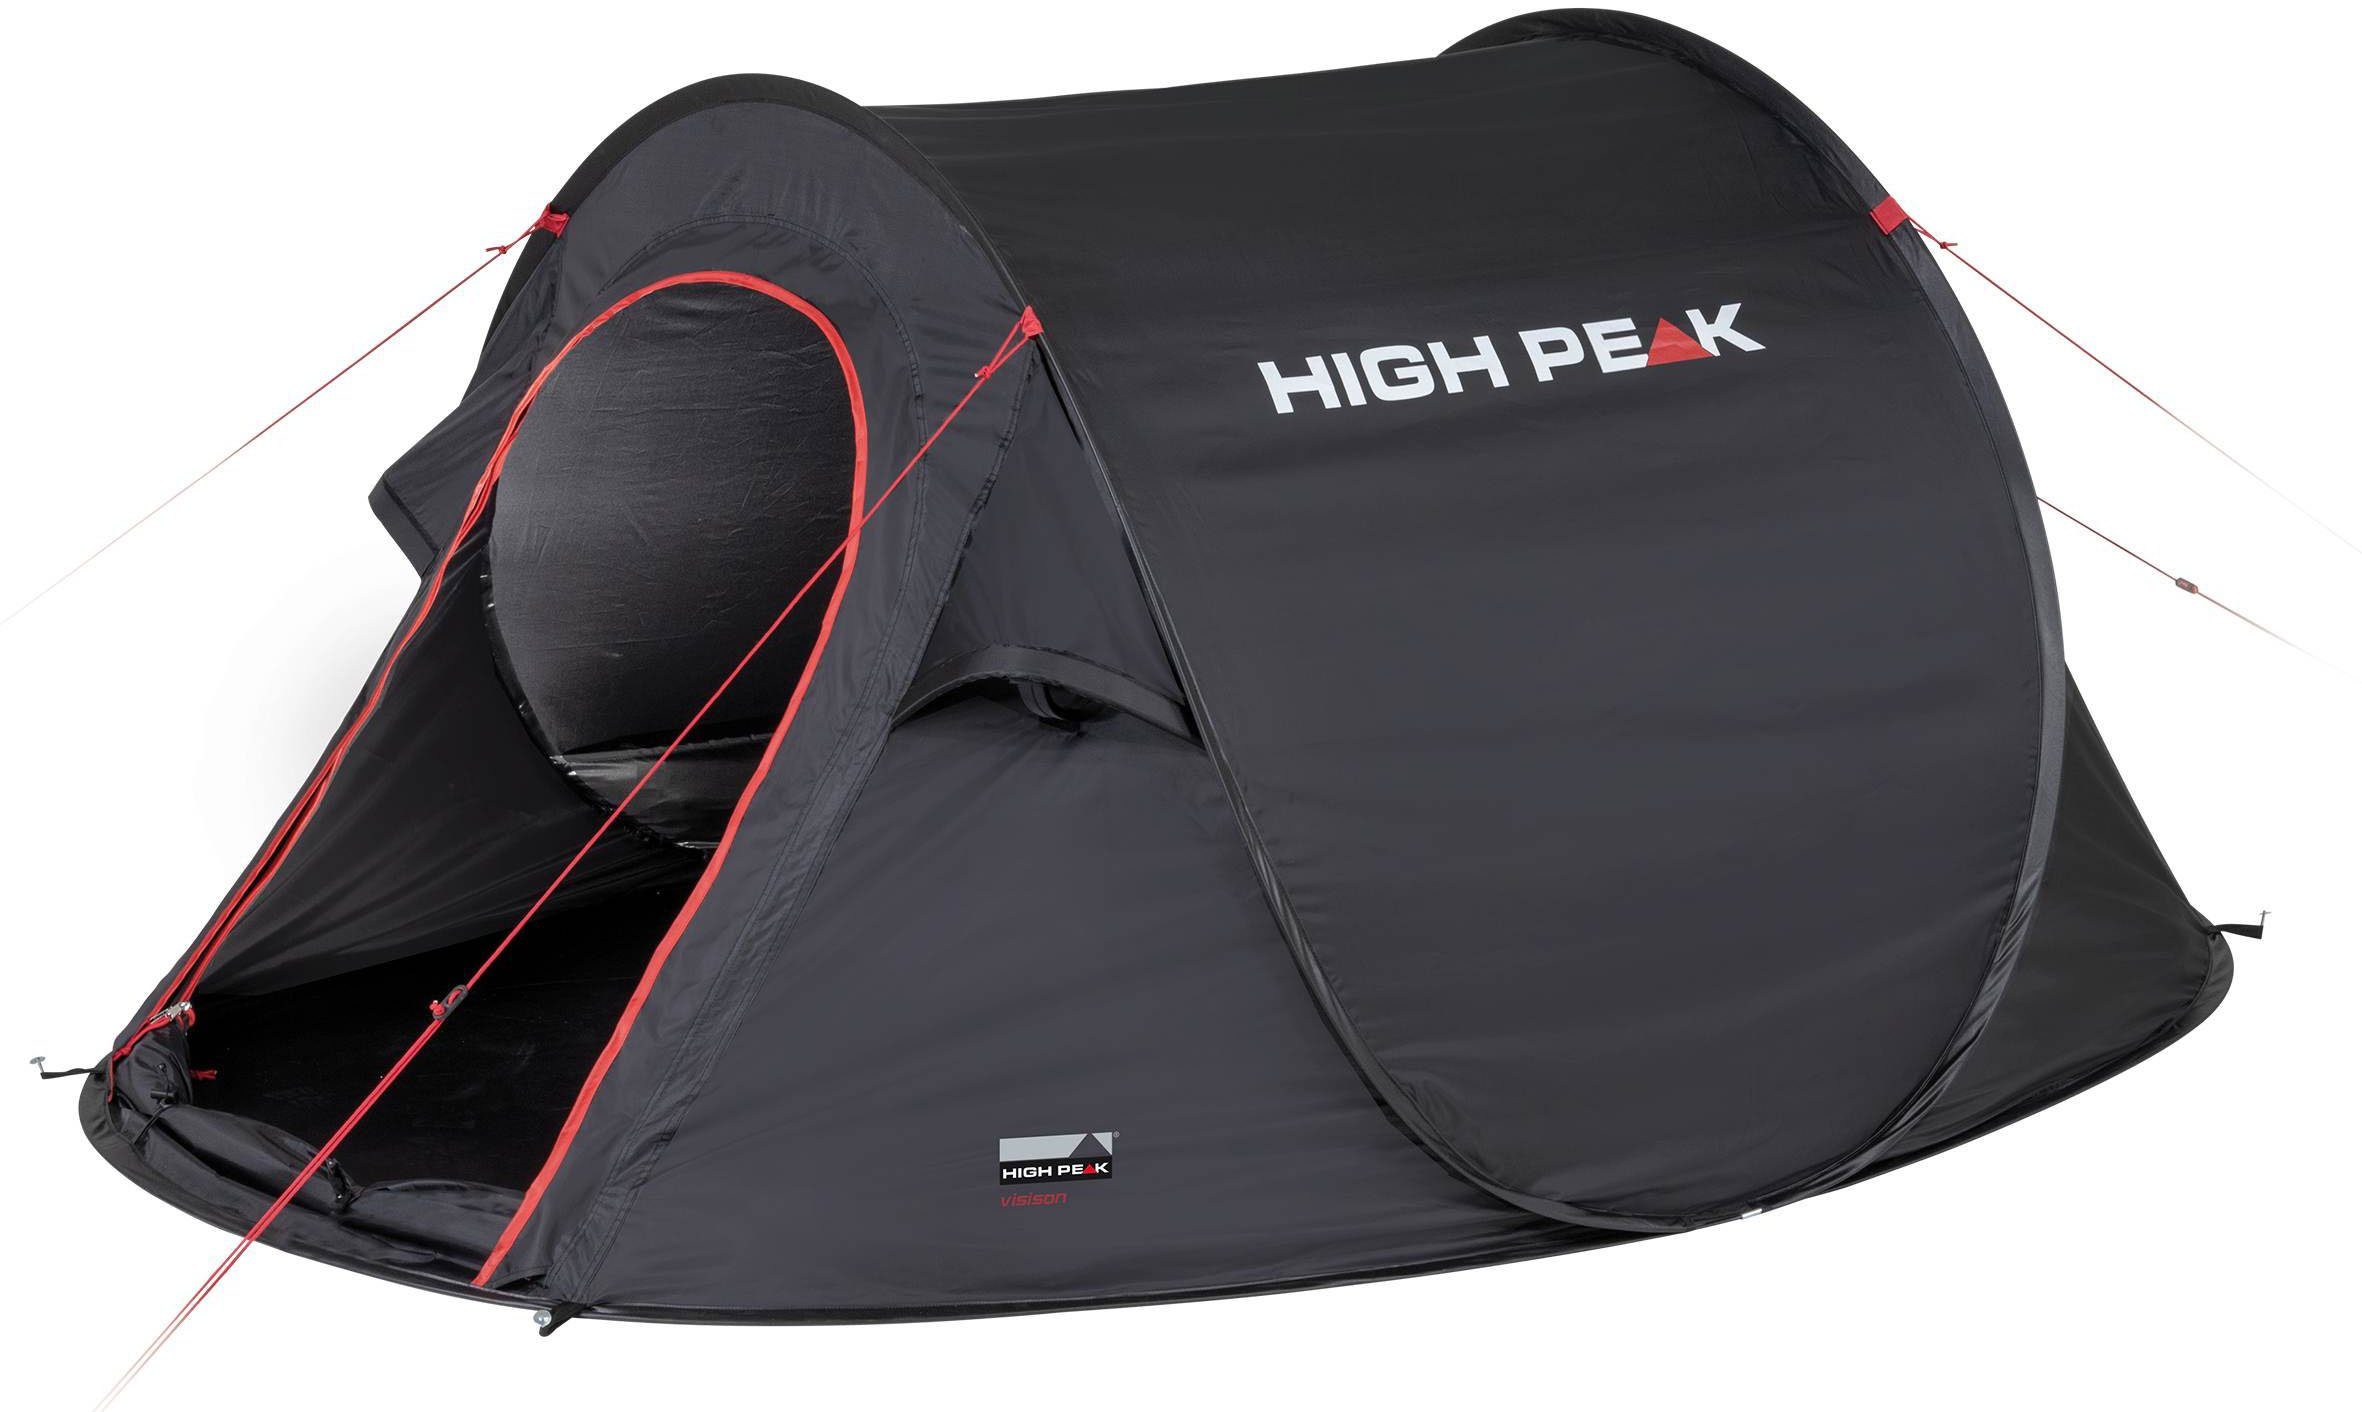 High Peak 2 Wurfzelt Personen: Zelt (mit Transporttasche) up Pop Vision 3